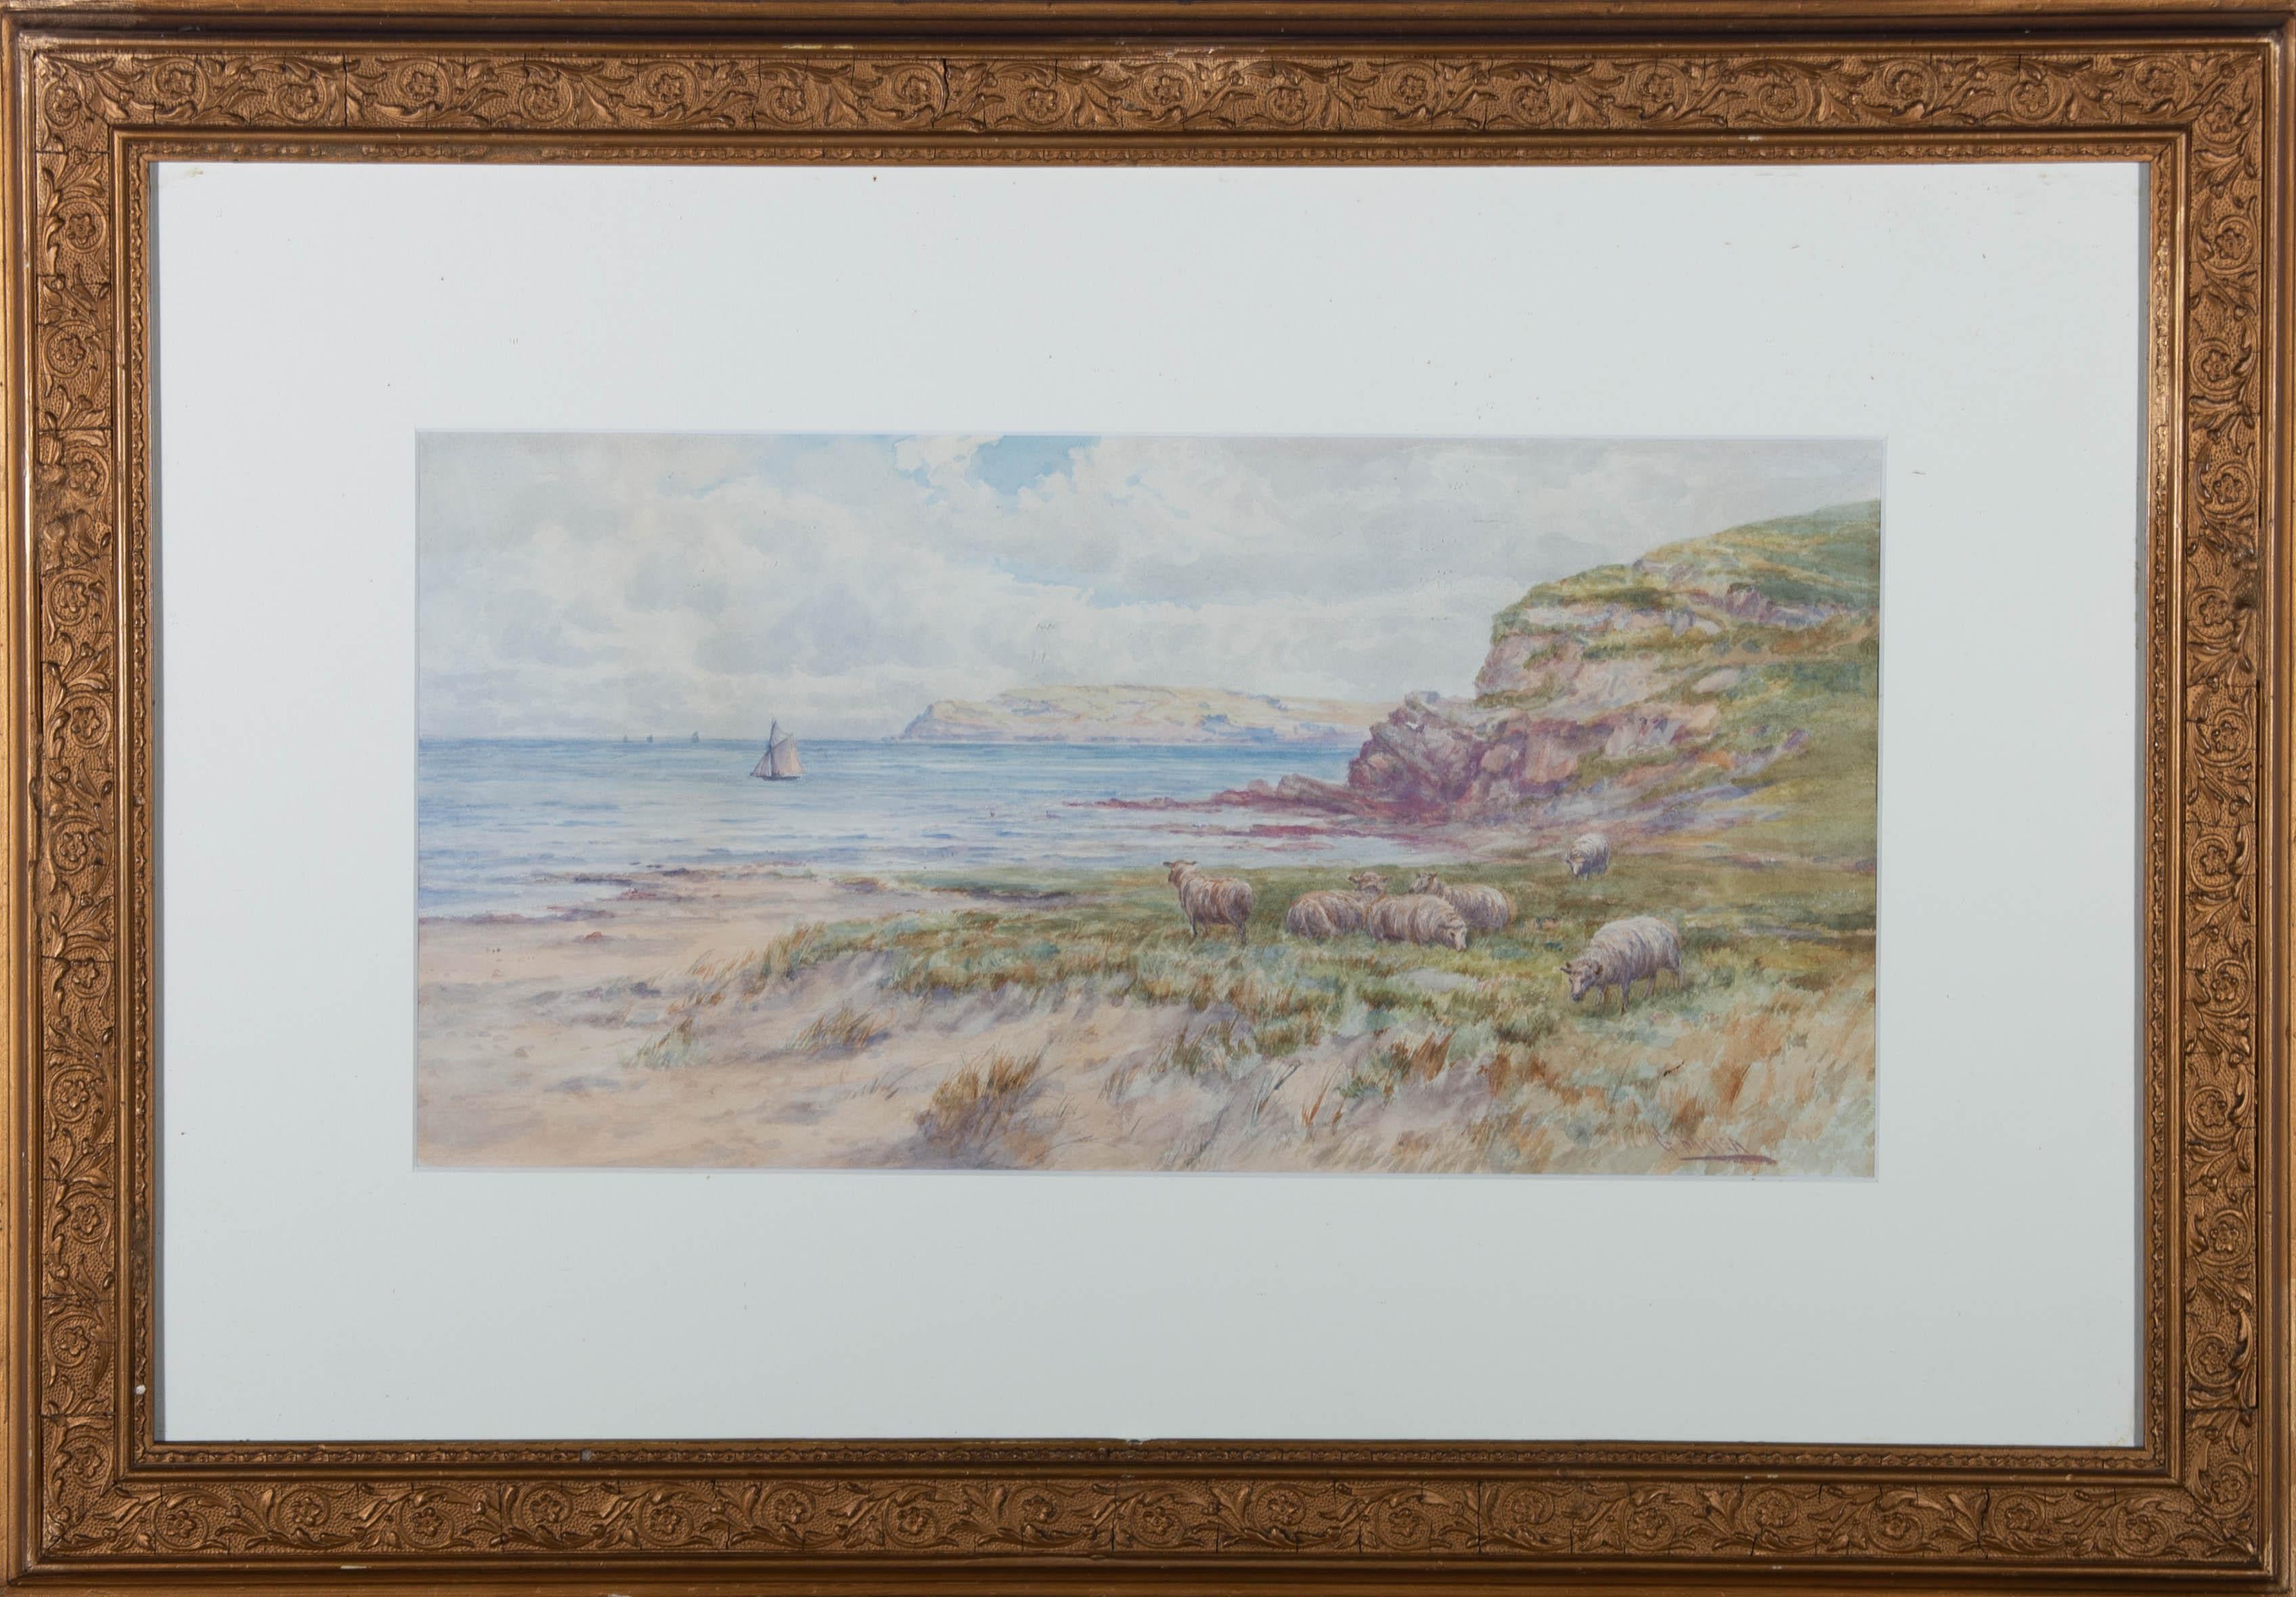 Eine Küstenszene mit einer weidenden Schafherde im Vordergrund und einer segelnden Gaffelschaluppe in der mittleren Entfernung. Die Komposition wurde vielleicht von William Holman Hunts (1827-1910) Werk "Our English Coasts" (1852) beeinflusst.